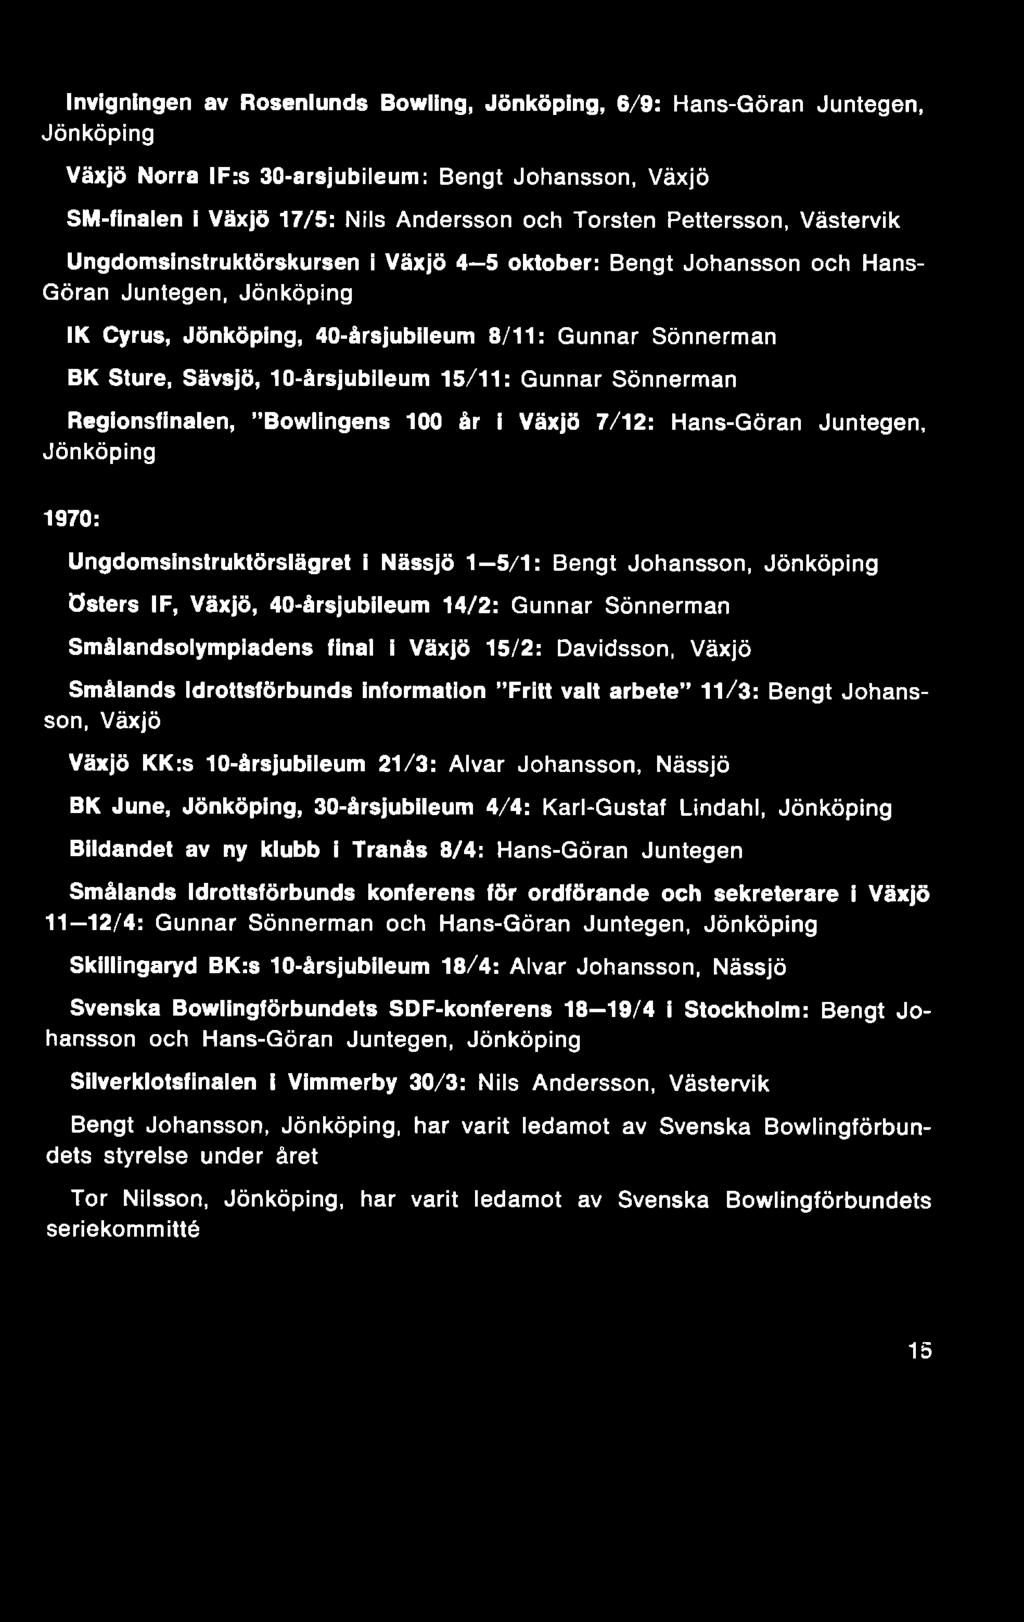 KK:s 10-årsjubileum 21/3: Alvar Johansson, Nässjö BK June, Jönköping, 30-årsjubileum 4/4: Karl-Gustaf Lindahl, Jönköping Bildandet av ny klubb i Tranås 8/4: Hans-Göran Juntegen Smålands